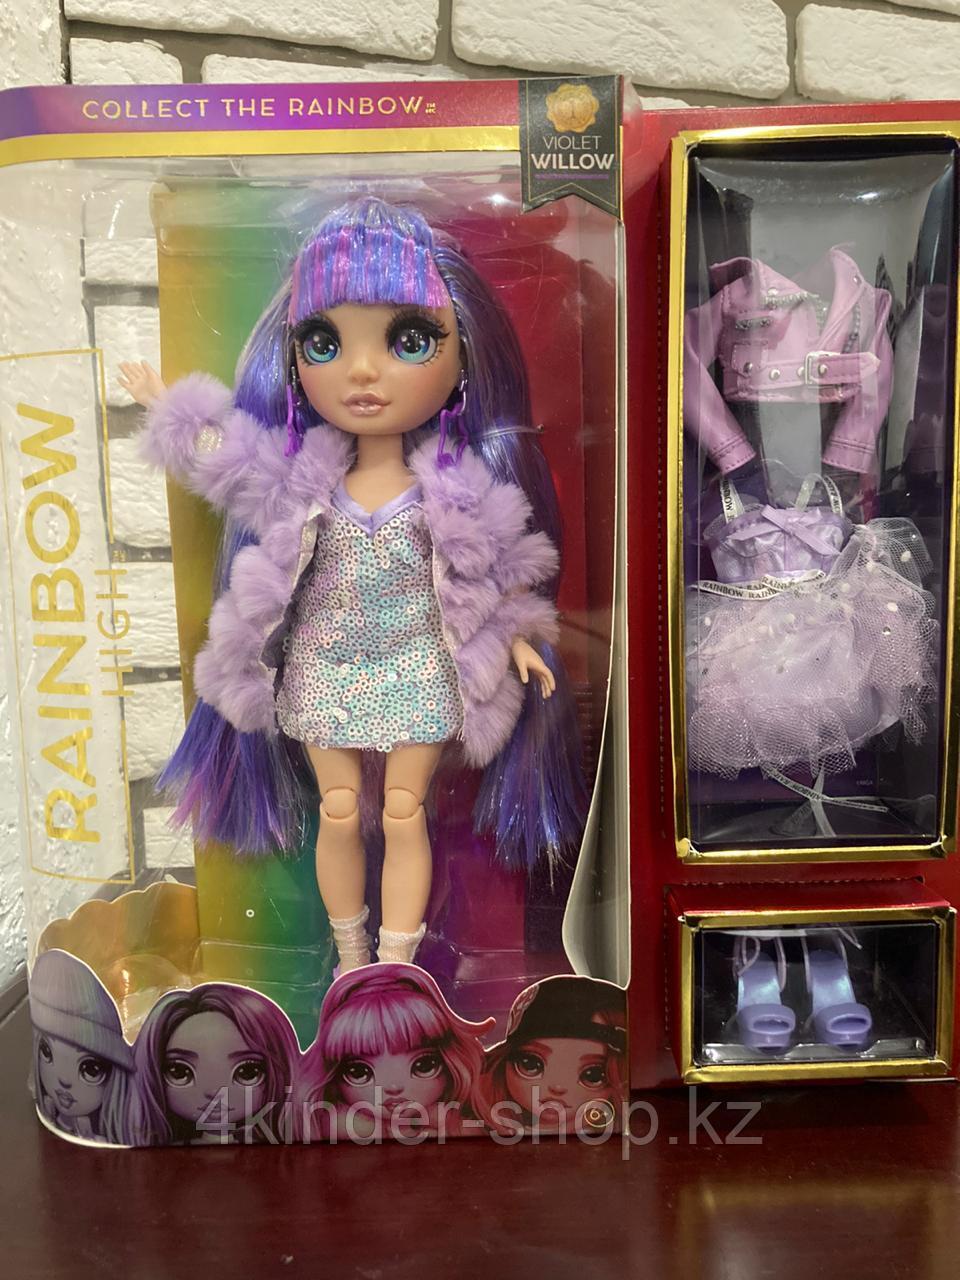 Рейнбоу Хай - Кукла Rainbow High Виолетта